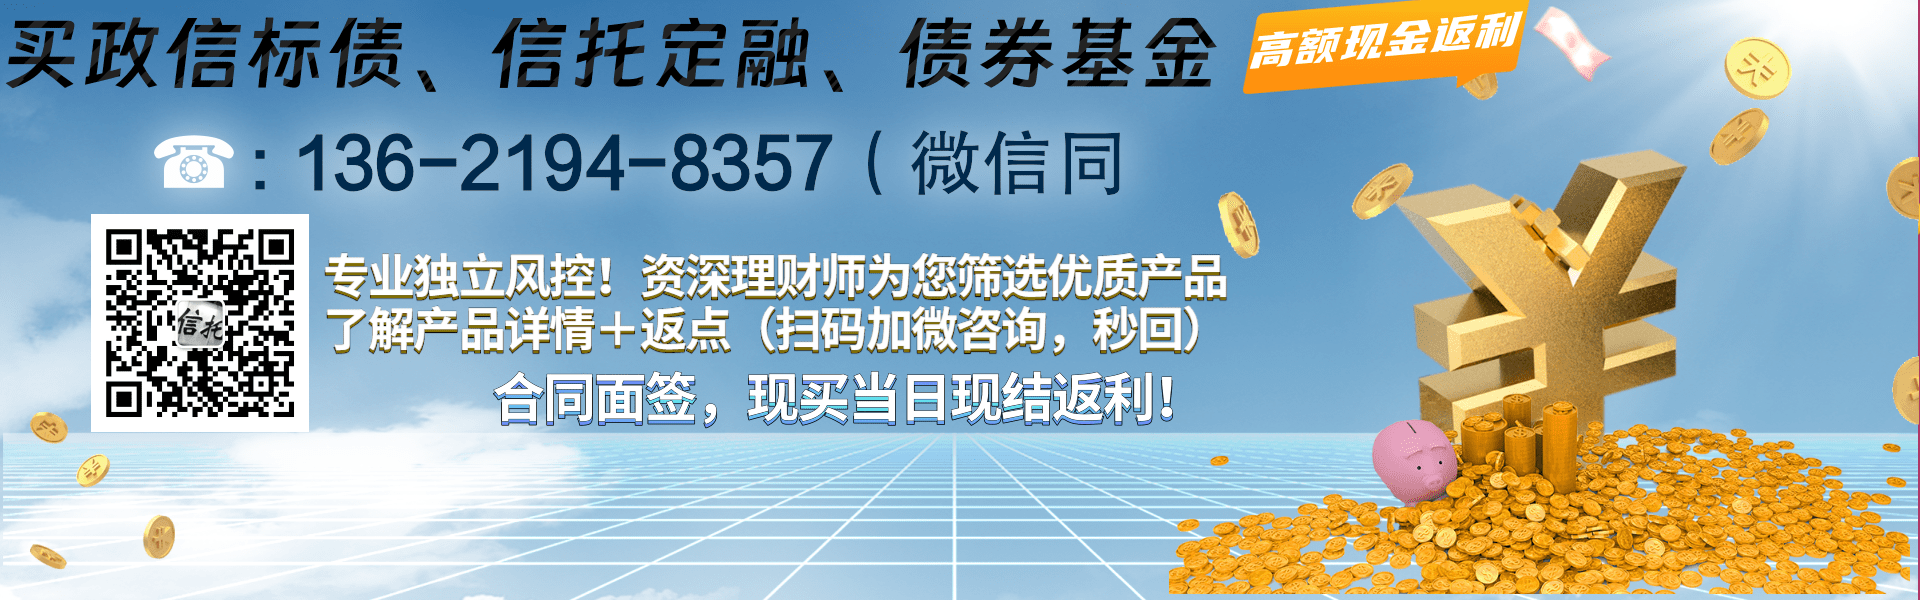 重庆市白马山旅游开发债权资产计划